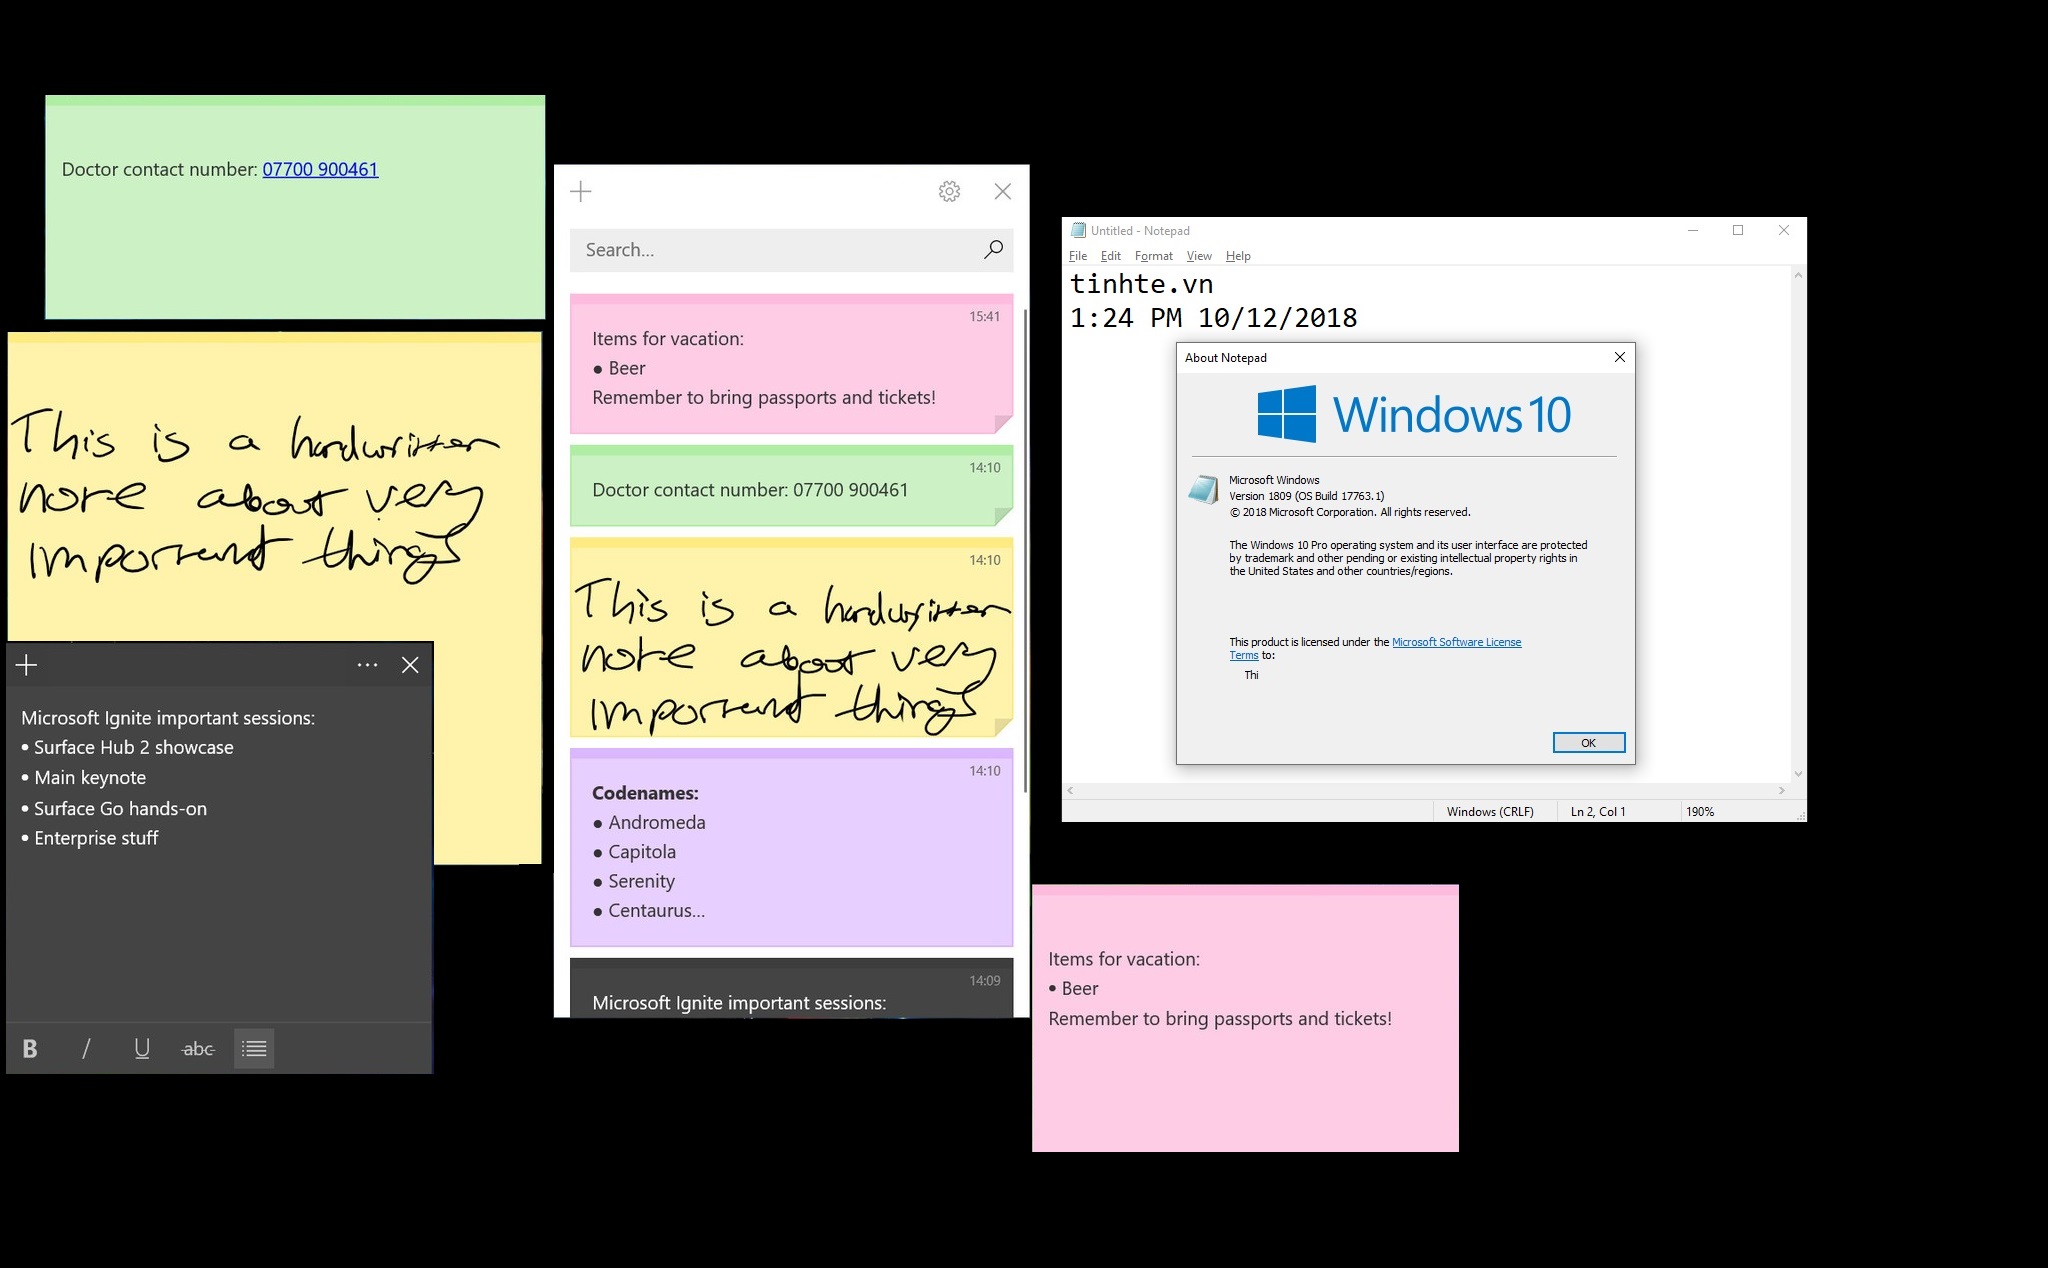 Notepad của Windows 10 1809 là công cụ hỗ trợ tuyệt vời cho các dân văn phòng và sinh viên khi làm việc với văn bản. Với giao diện trực quan và tính năng đa dạng, Notepad của Windows 10 1809 giúp cho công việc của bạn trở nên đơn giản và nhanh chóng hơn bao giờ hết. Hãy khám phá Notepad của Windows 10 1809 để nâng cao hiệu quả làm việc của bạn!